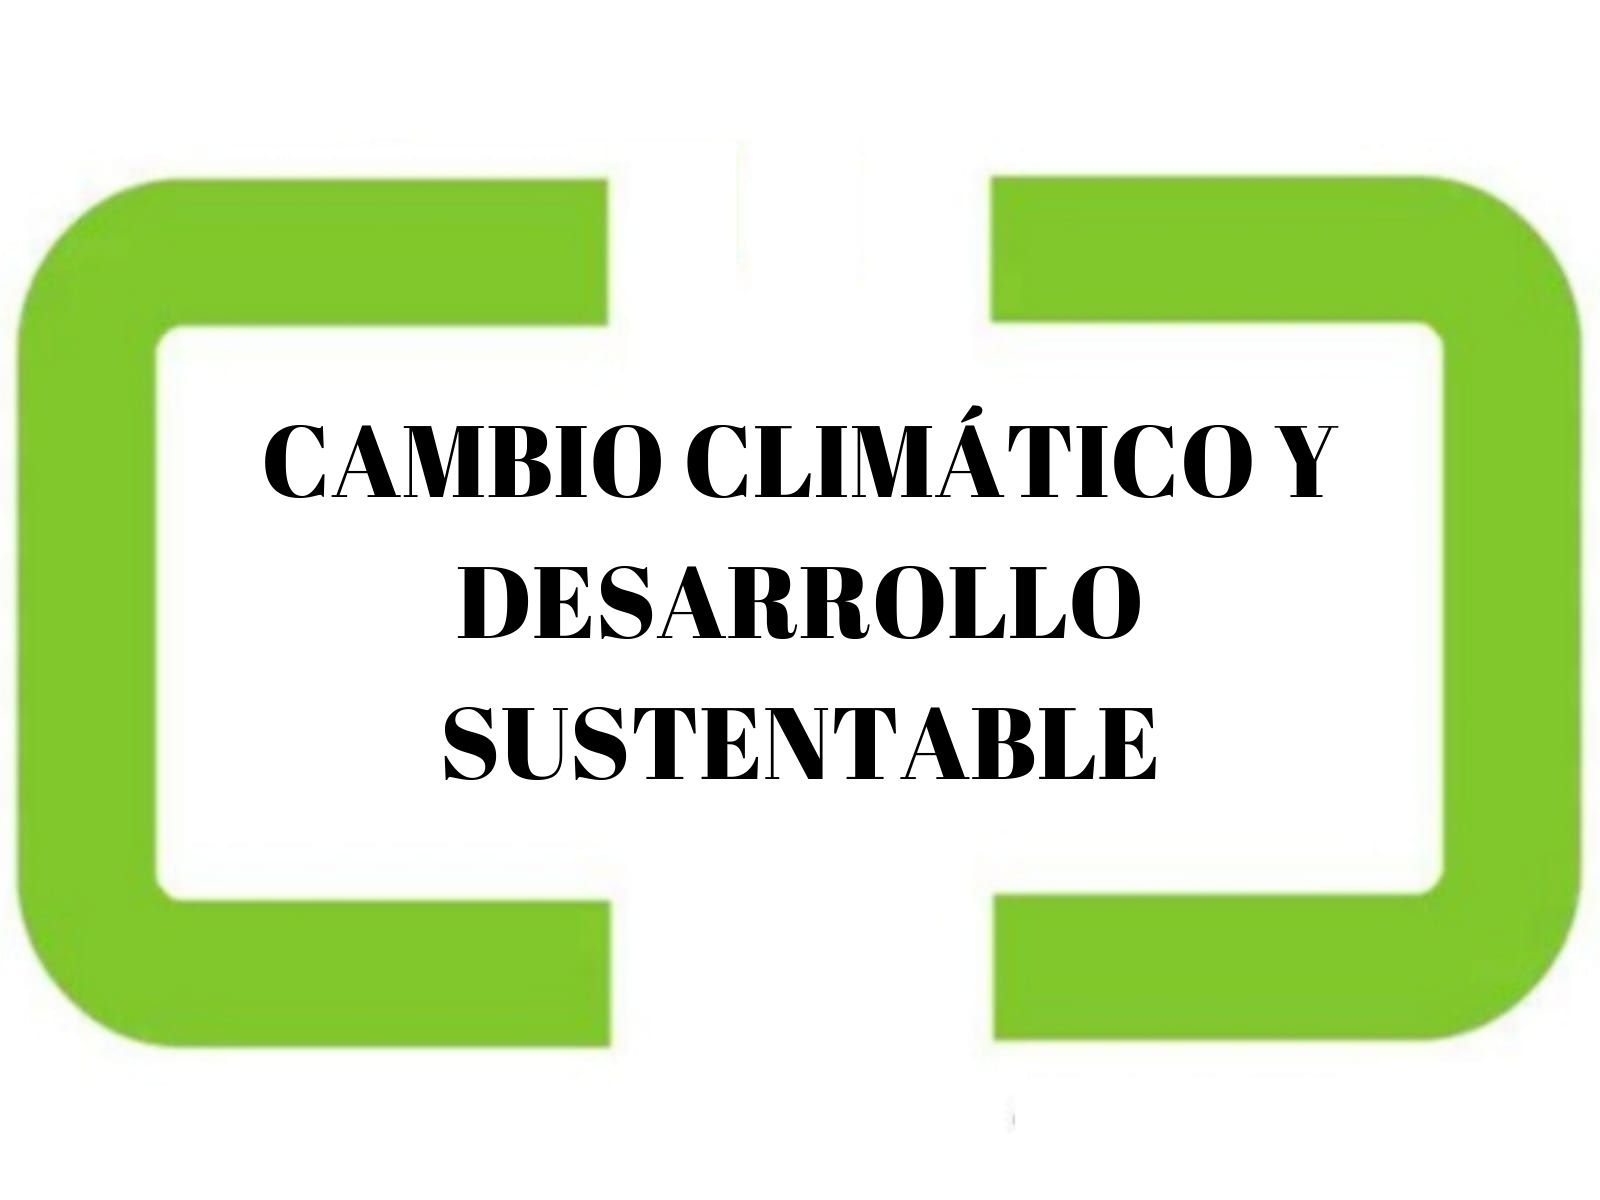 CAMBIO CLIMÁTICO Y DESARROLLO SUSTENTABLE